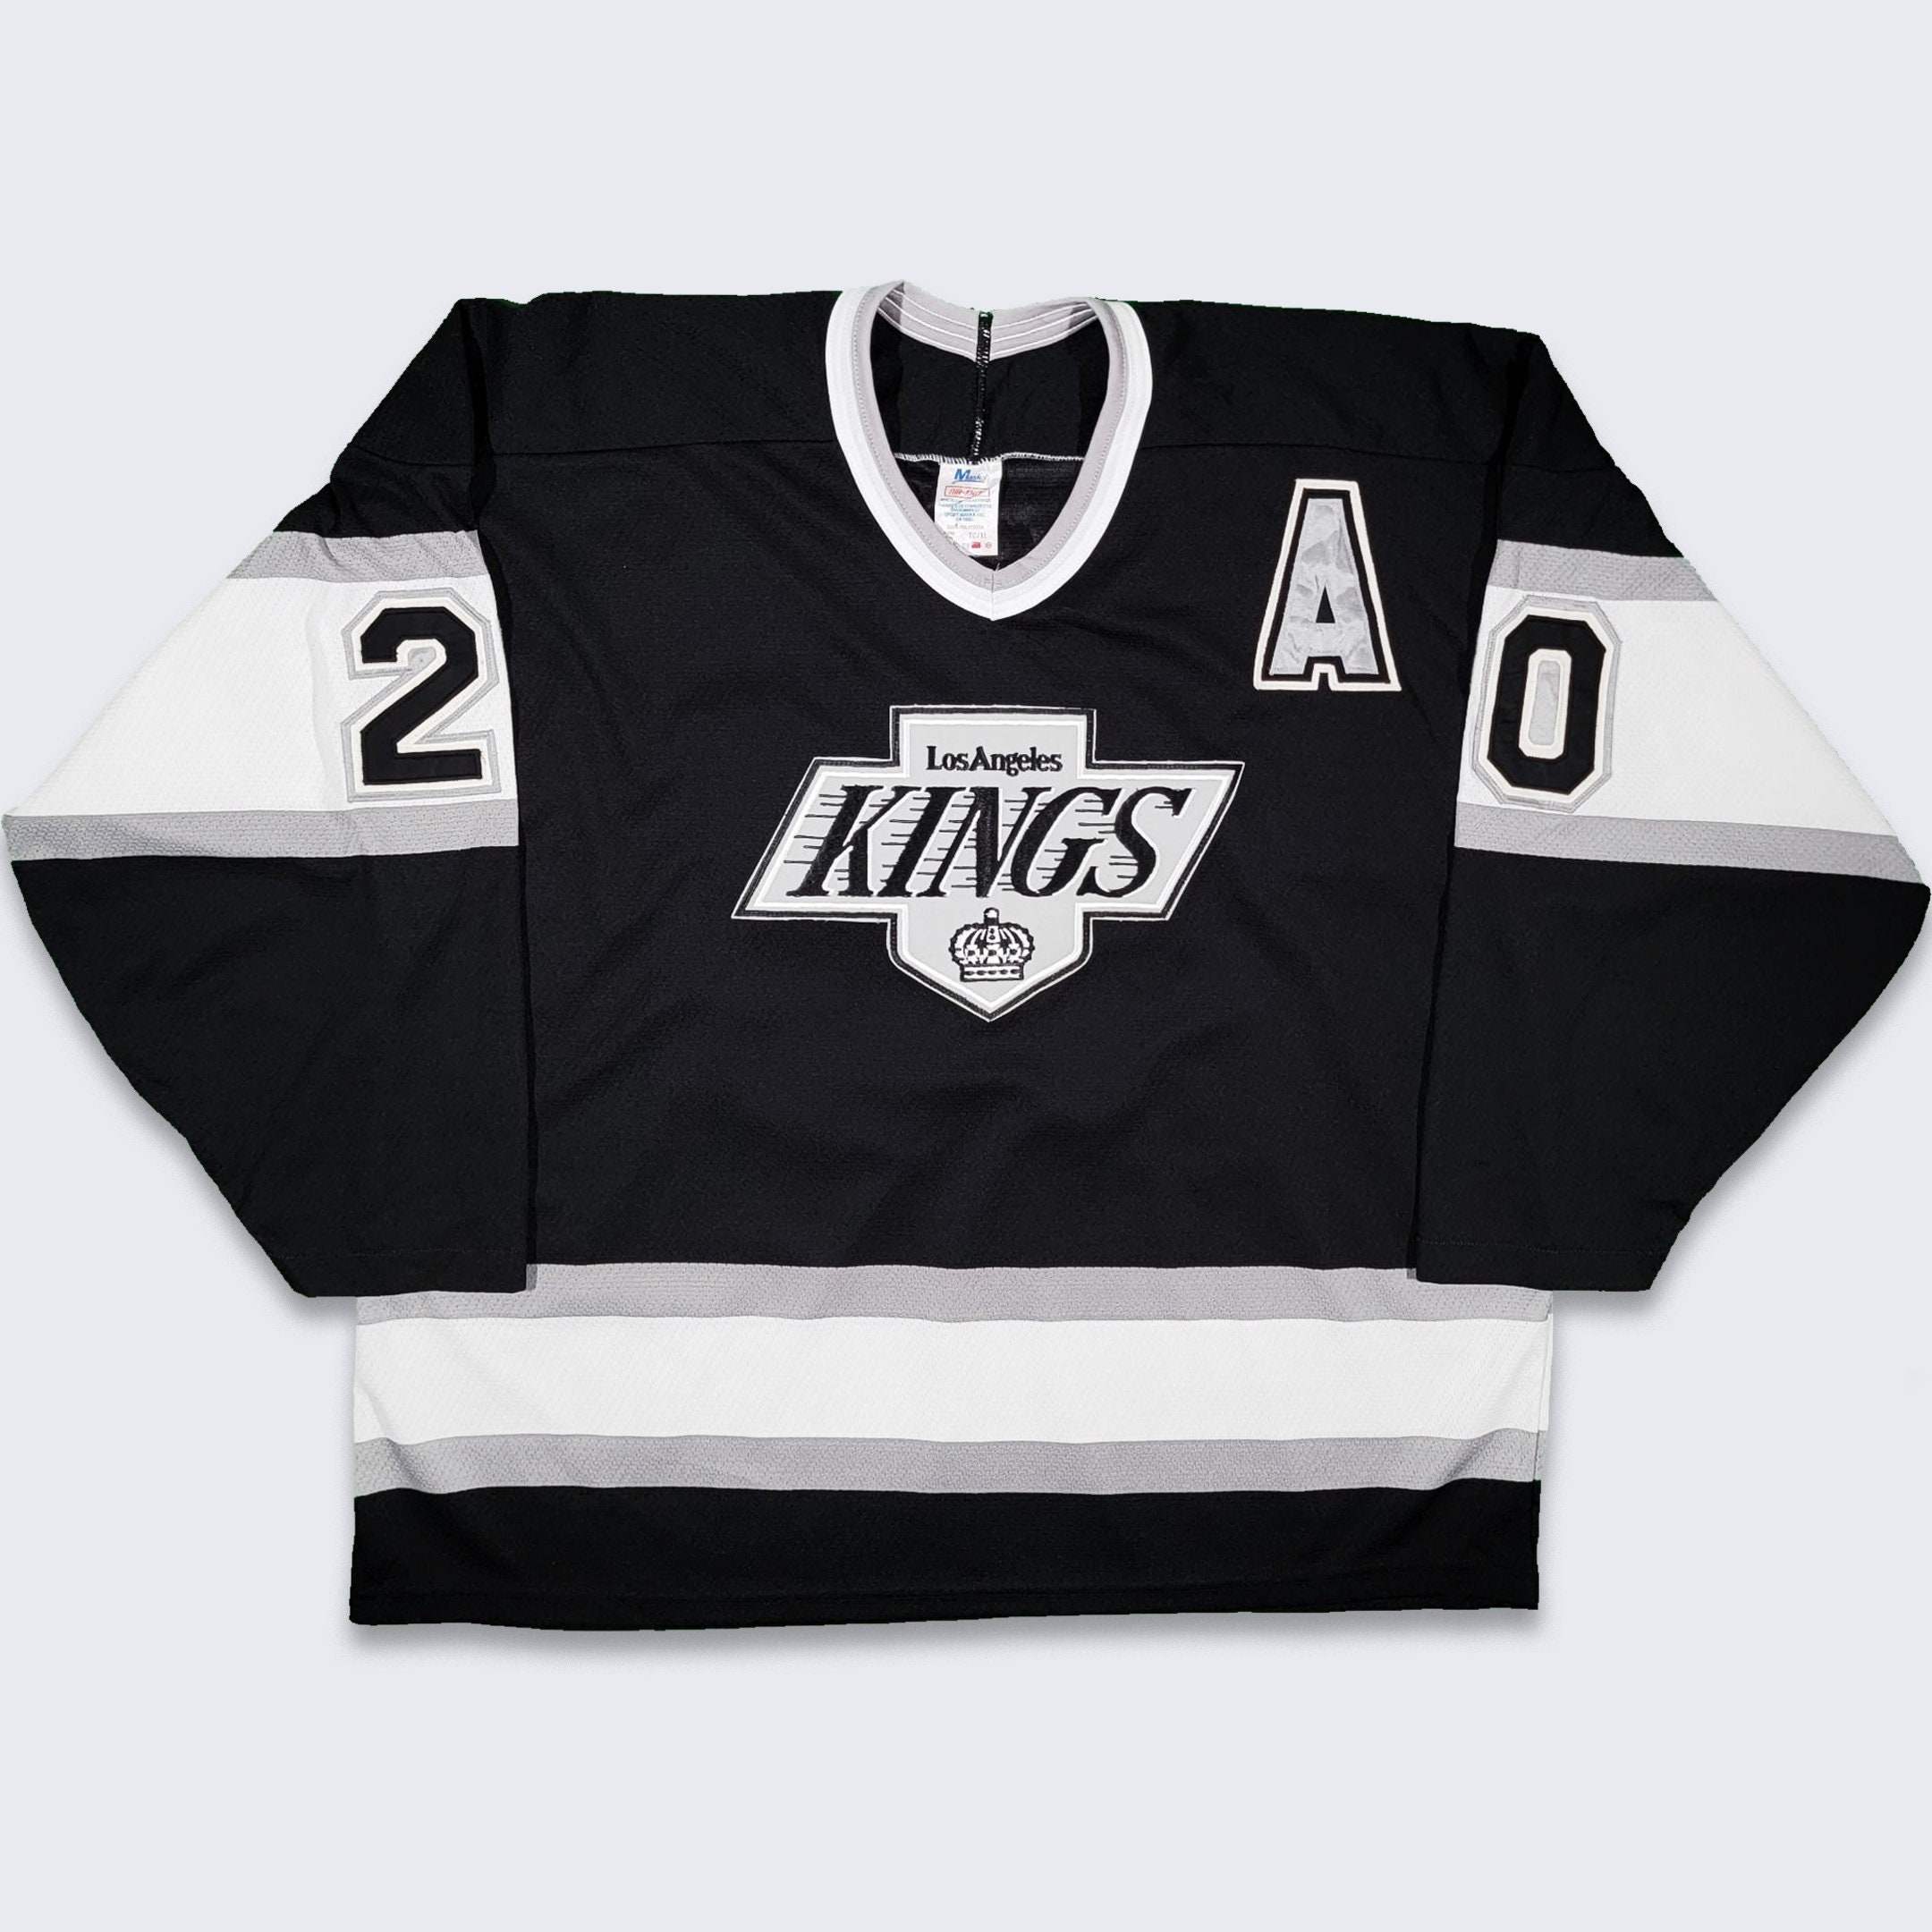 Los Angeles Kings: 1988 CCM Jersey (L) – National Vintage League Ltd.